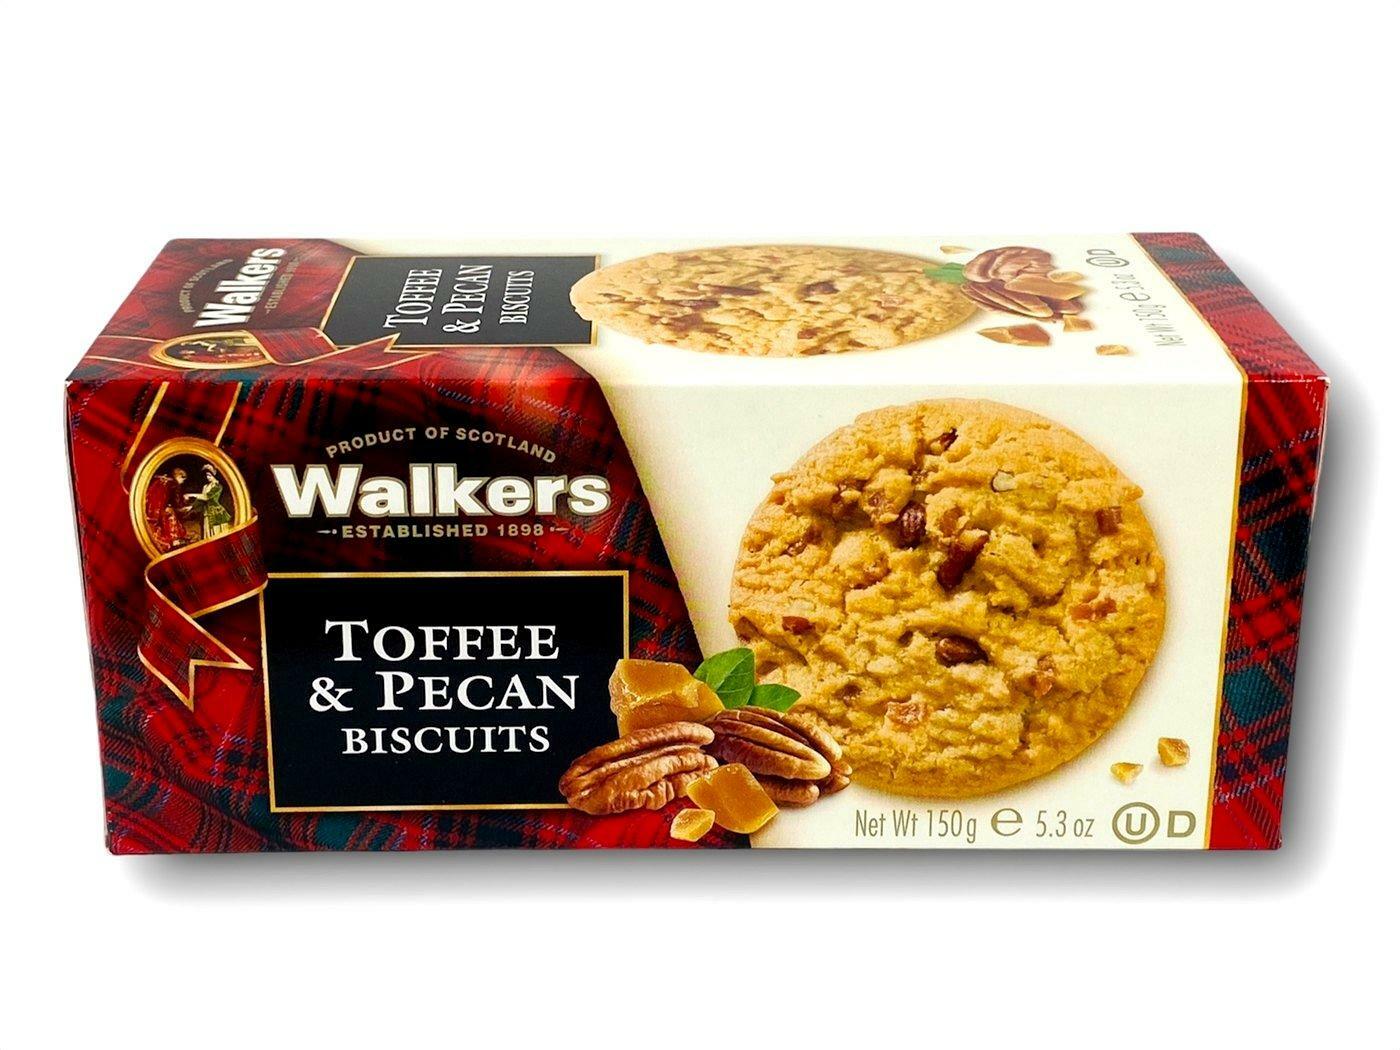 Walker's Toffee & Pecan Biscuits